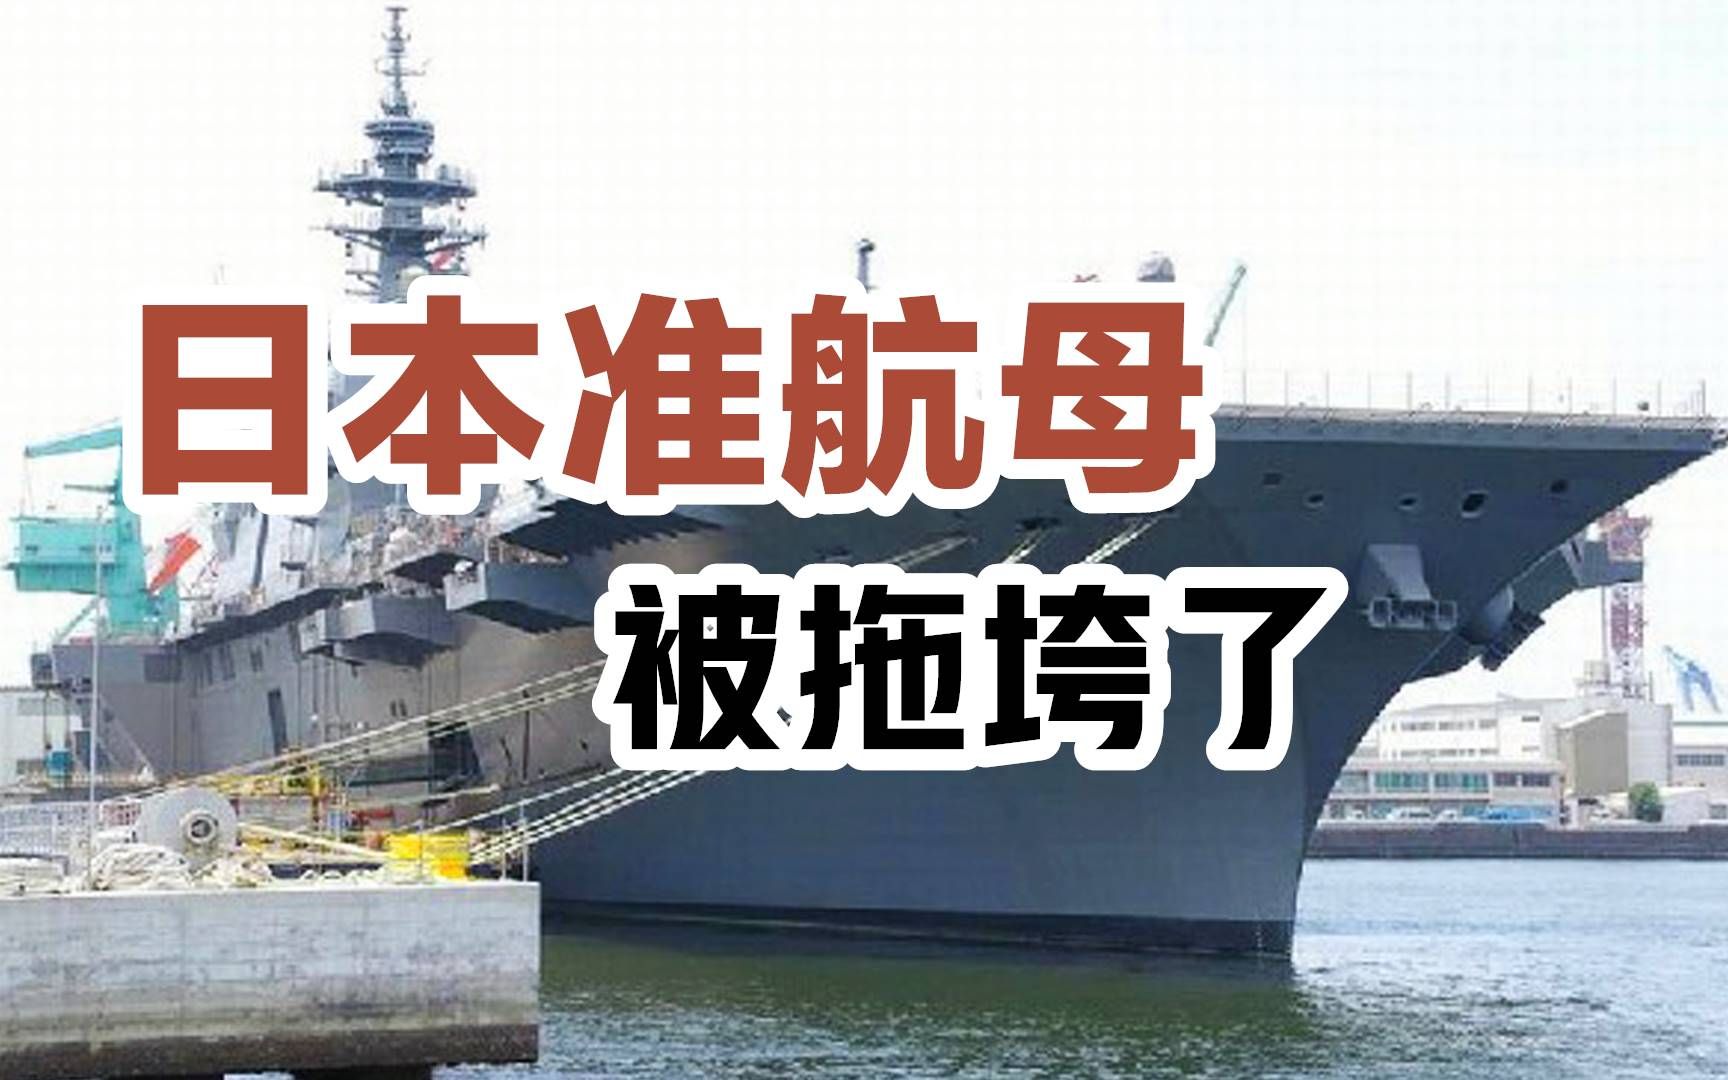 日本准航母尾随辽宁舰近10天被拖垮了